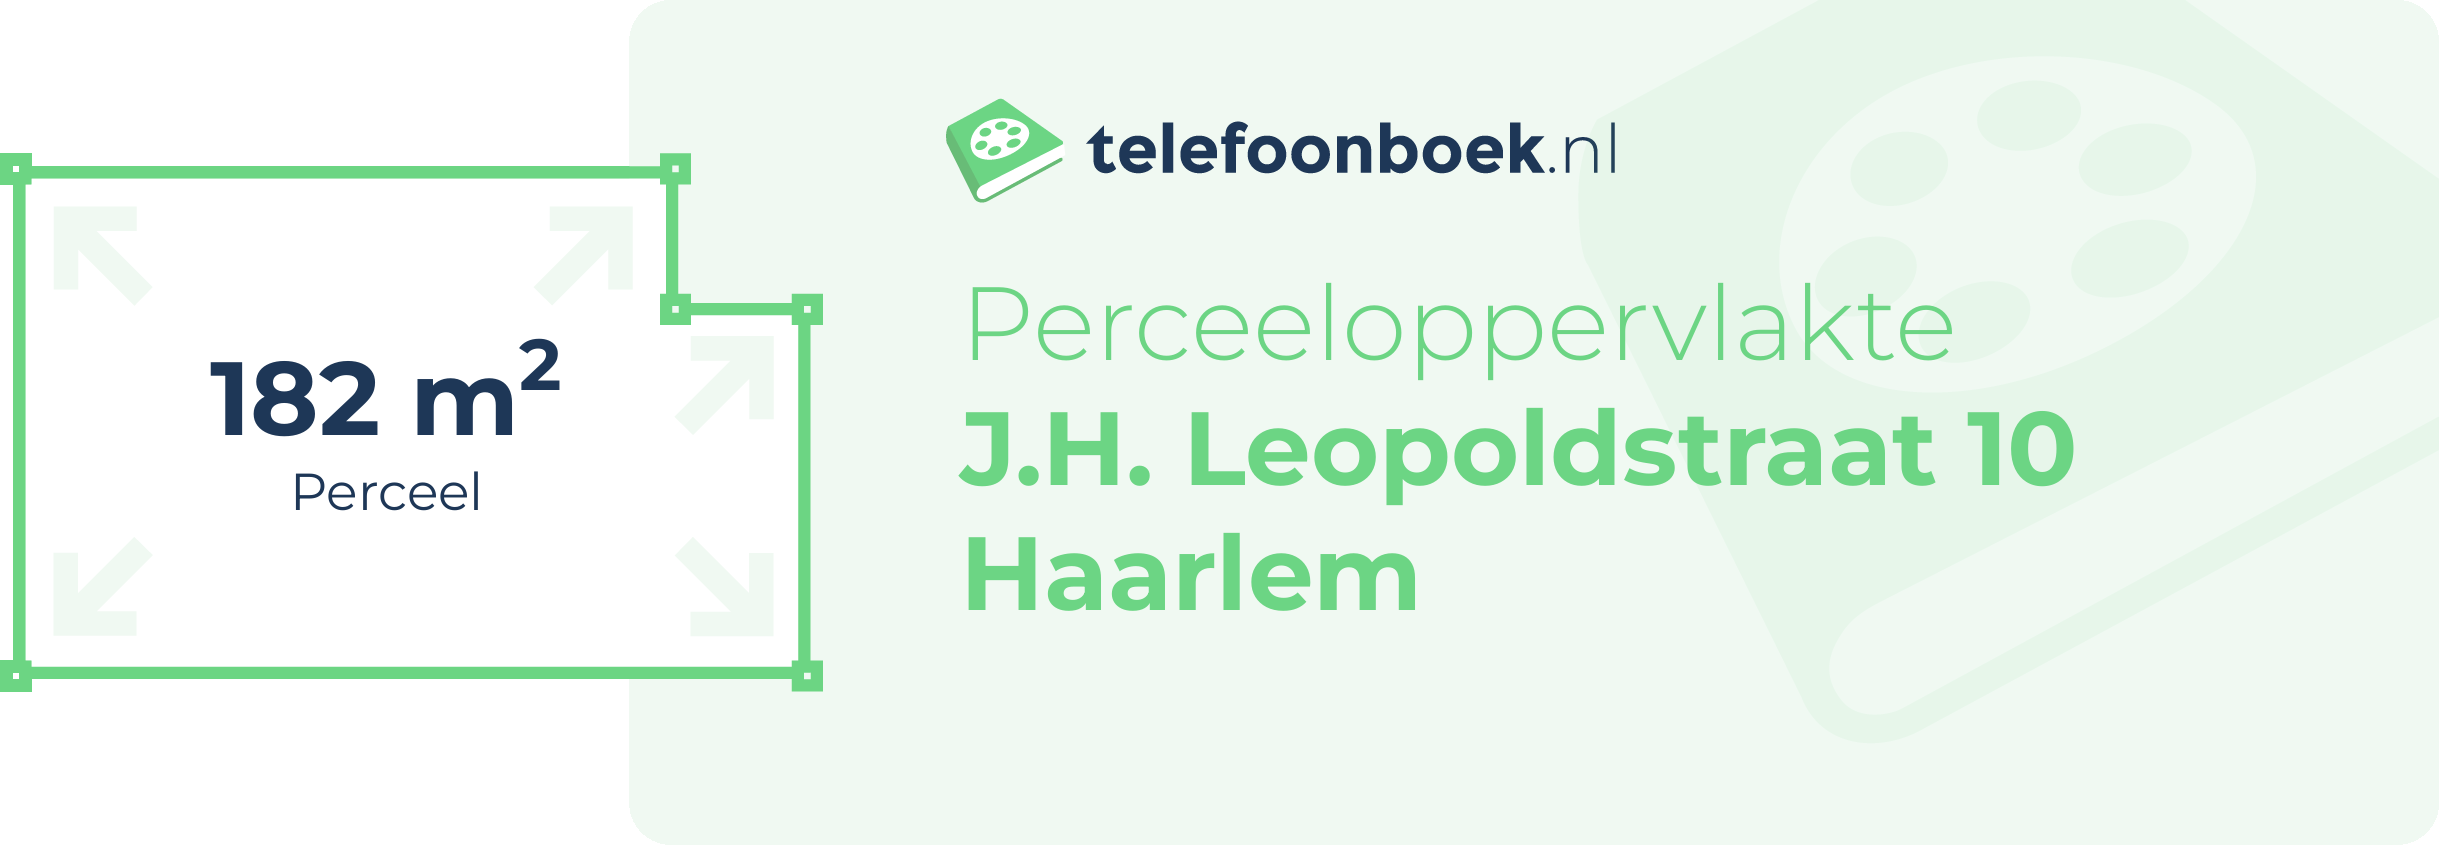 Perceeloppervlakte J.H. Leopoldstraat 10 Haarlem